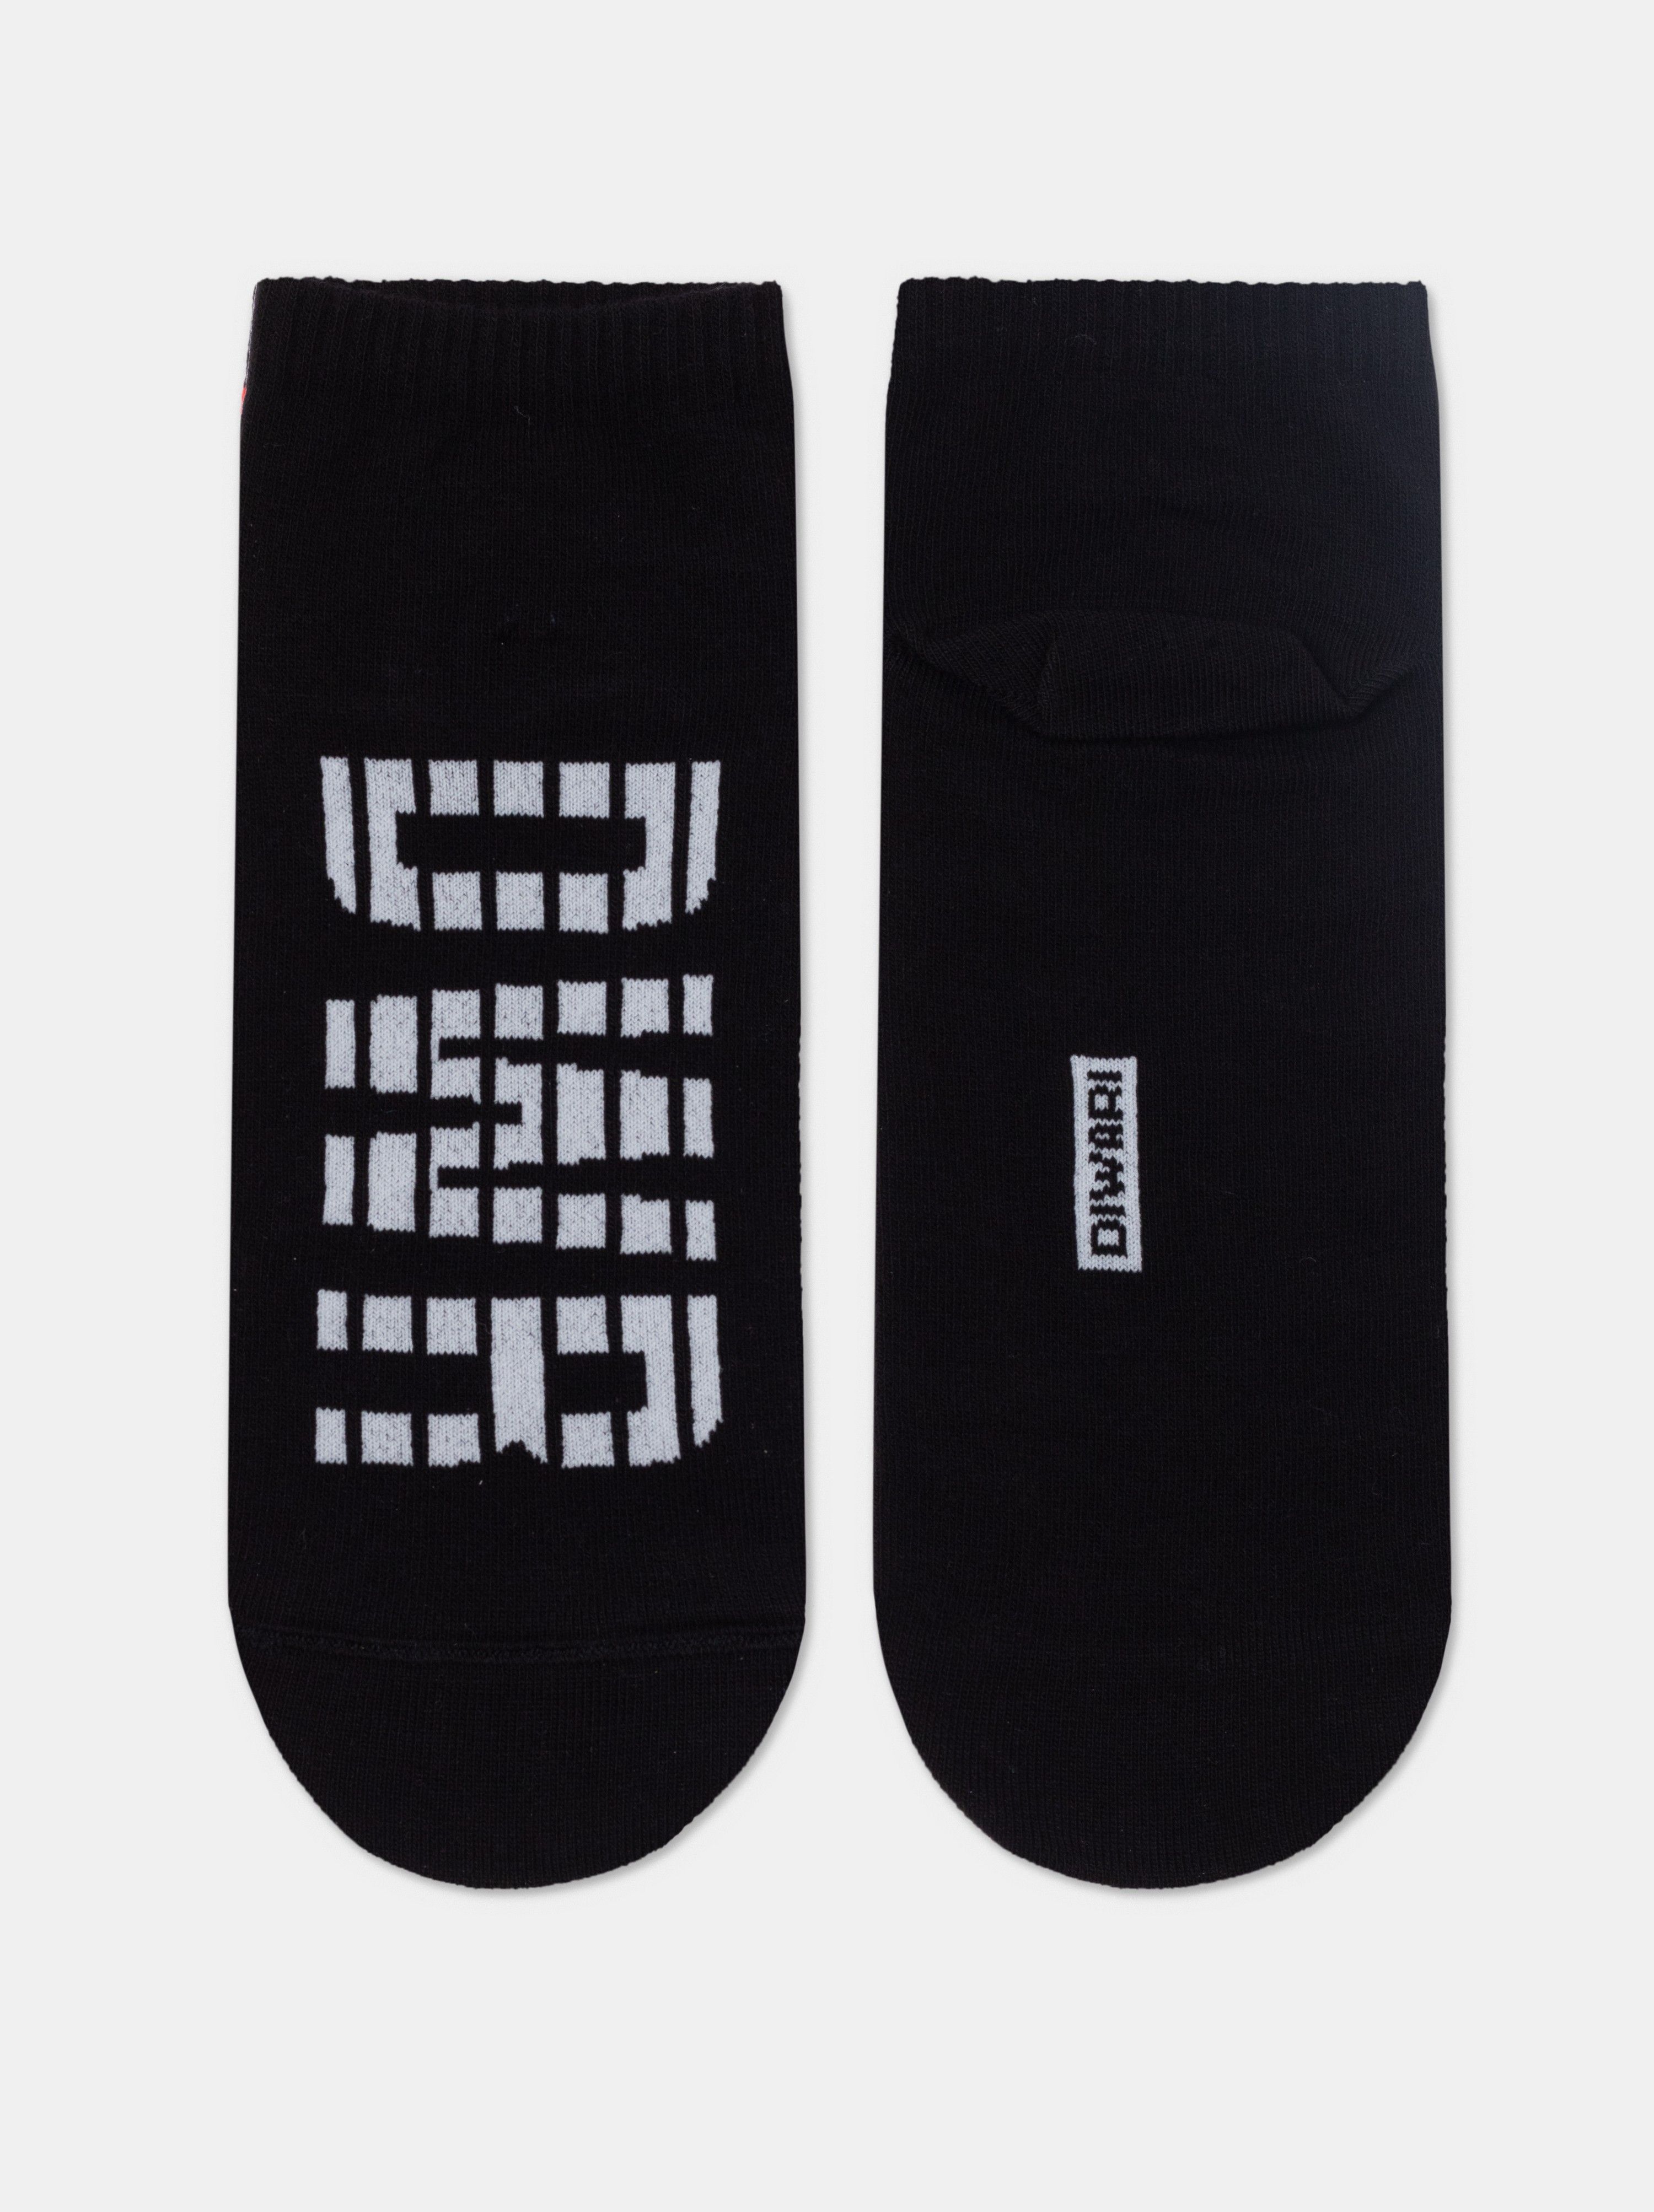 Короткие носки из хлопка с отсылкой к логотипу бренда Conte ⭐️, цвет серый, размер 40-41 - фото 1